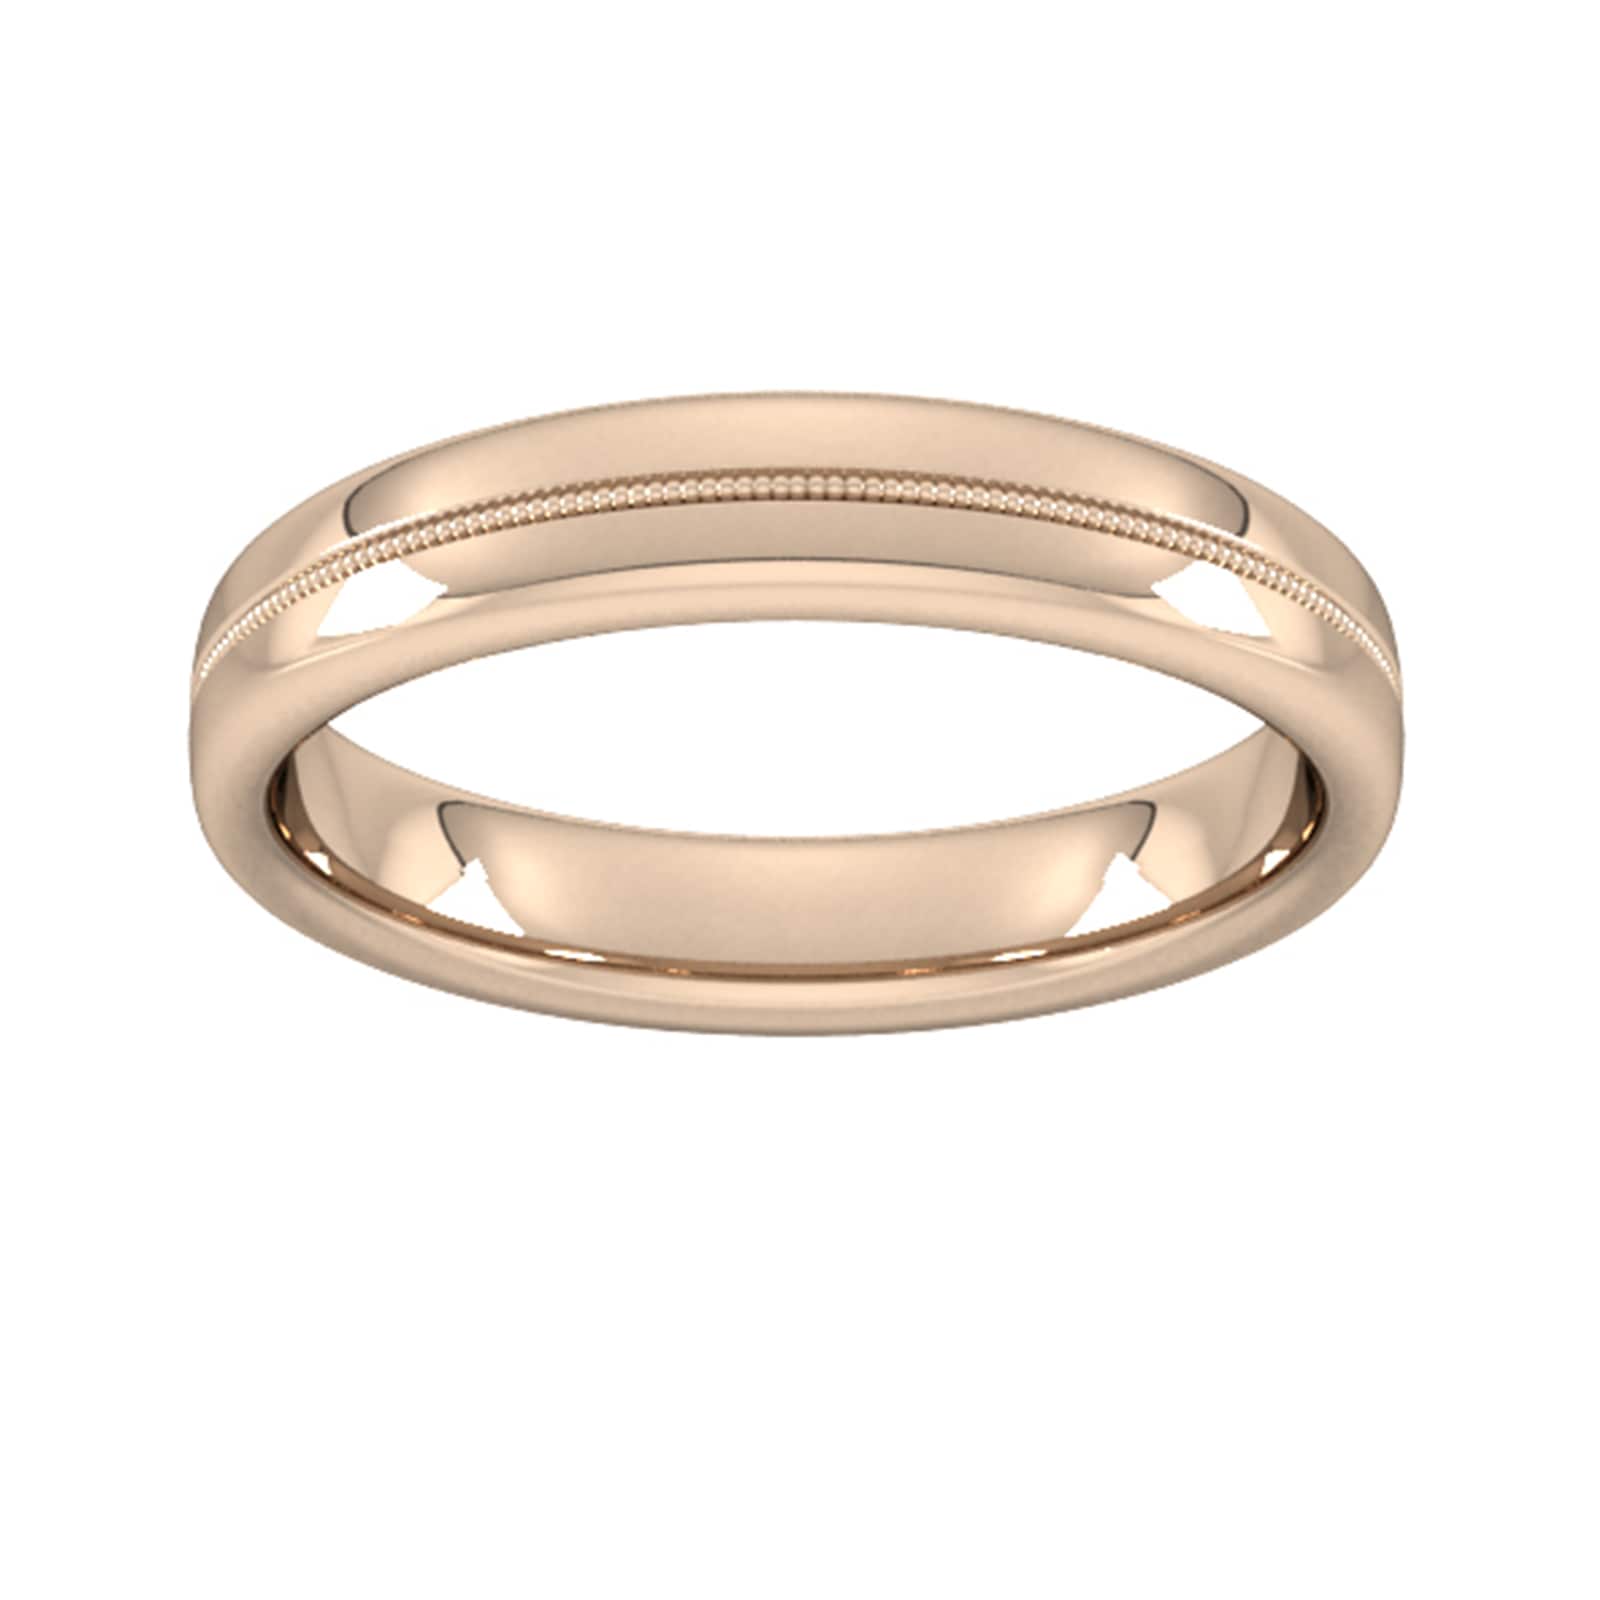 4mm Slight Court Standard Milgrain Centre Wedding Ring In 18 Carat Rose Gold - Ring Size S